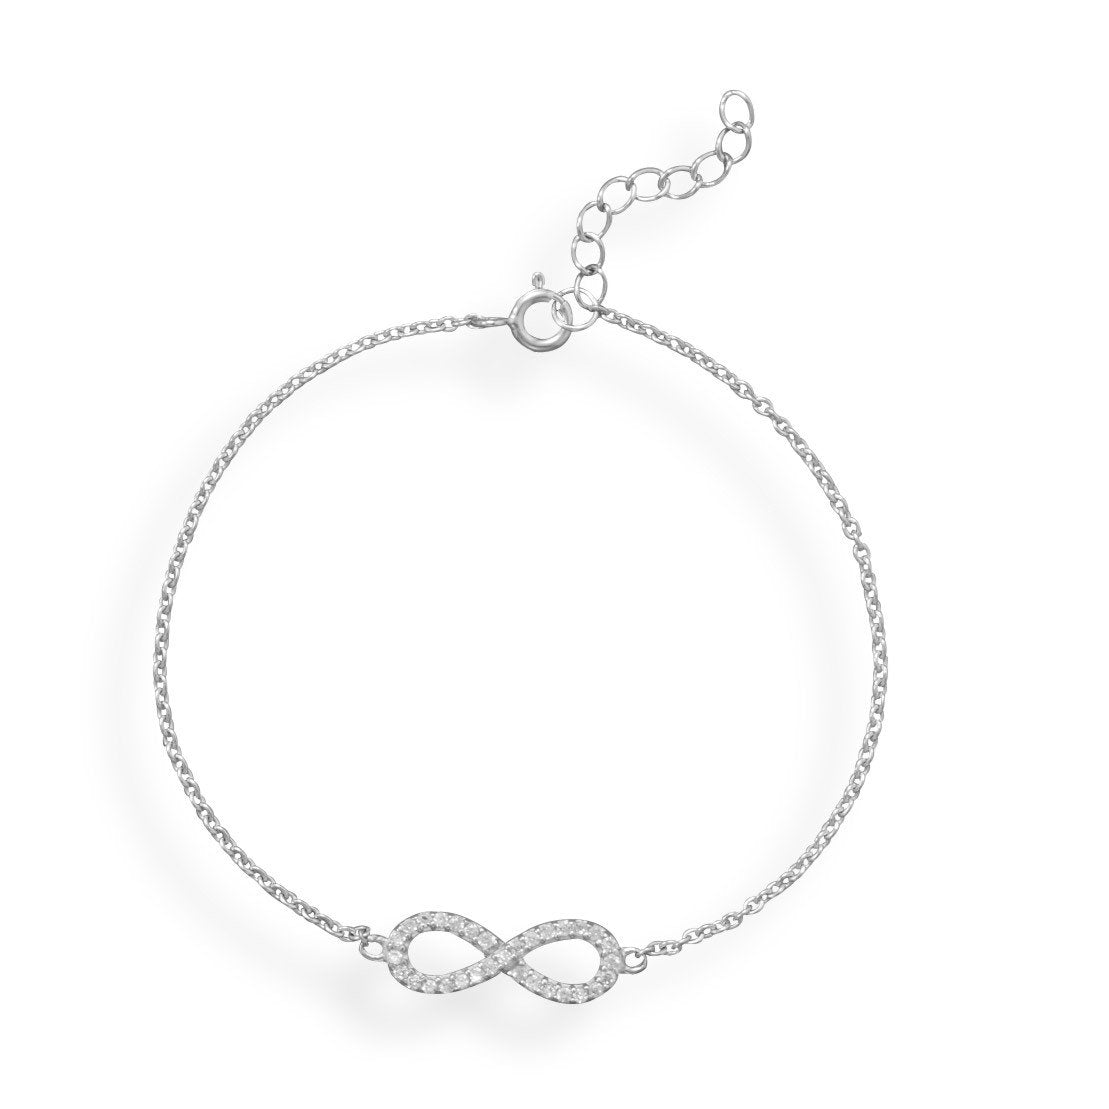 7" + 1" Rhodium Plated CZ Infinity Bracelet - Joyeria Lady